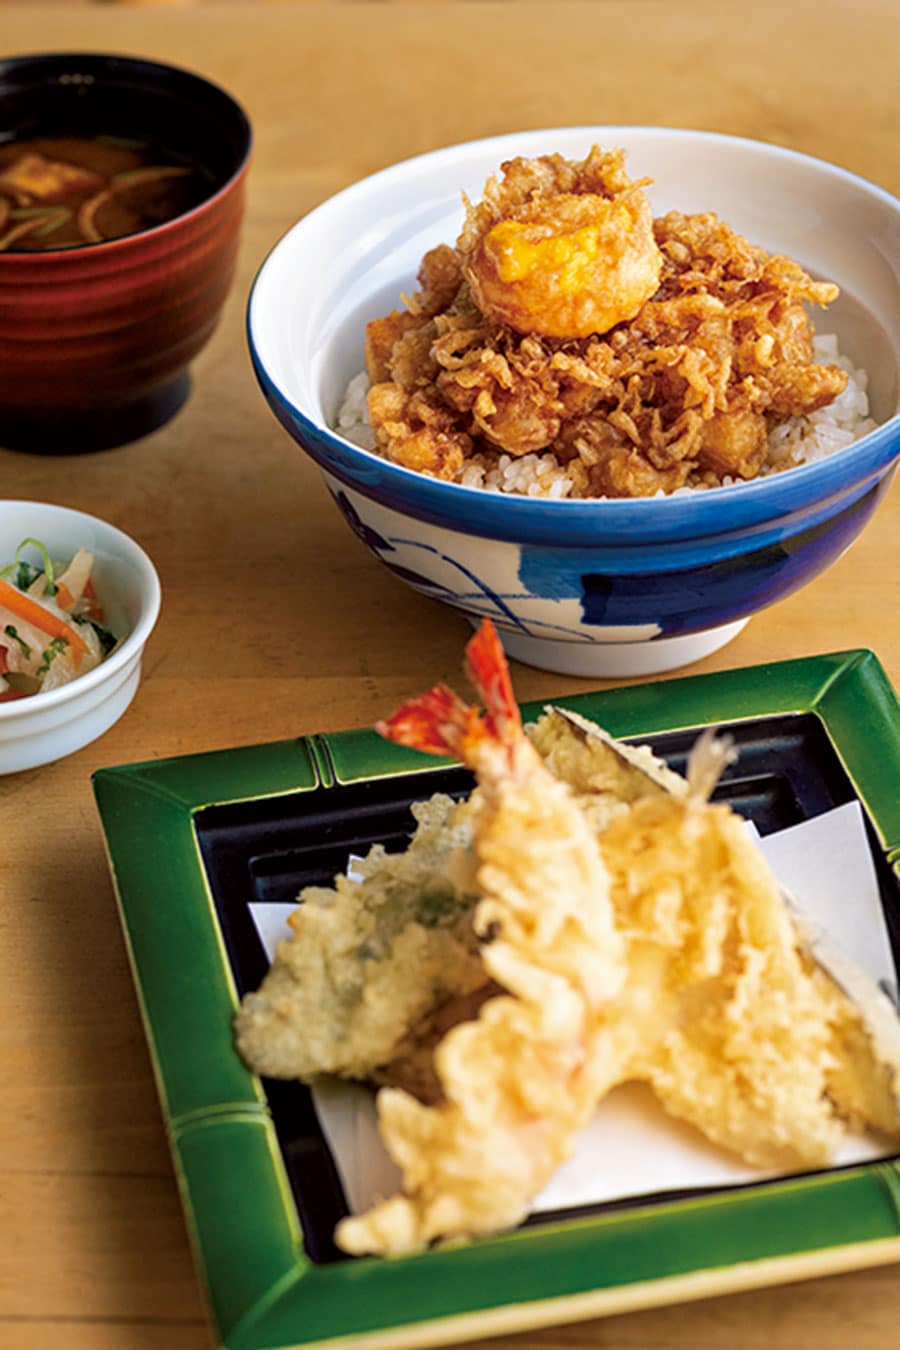 身のっけ定食 1,300円。かき揚げの上に黄身だけの天ぷらが。箸で割ると半熟卵黄がトロリ。エビ、キス、野菜3種の天ぷらも付いてボリュームたっぷり。味噌汁、香の物付き。